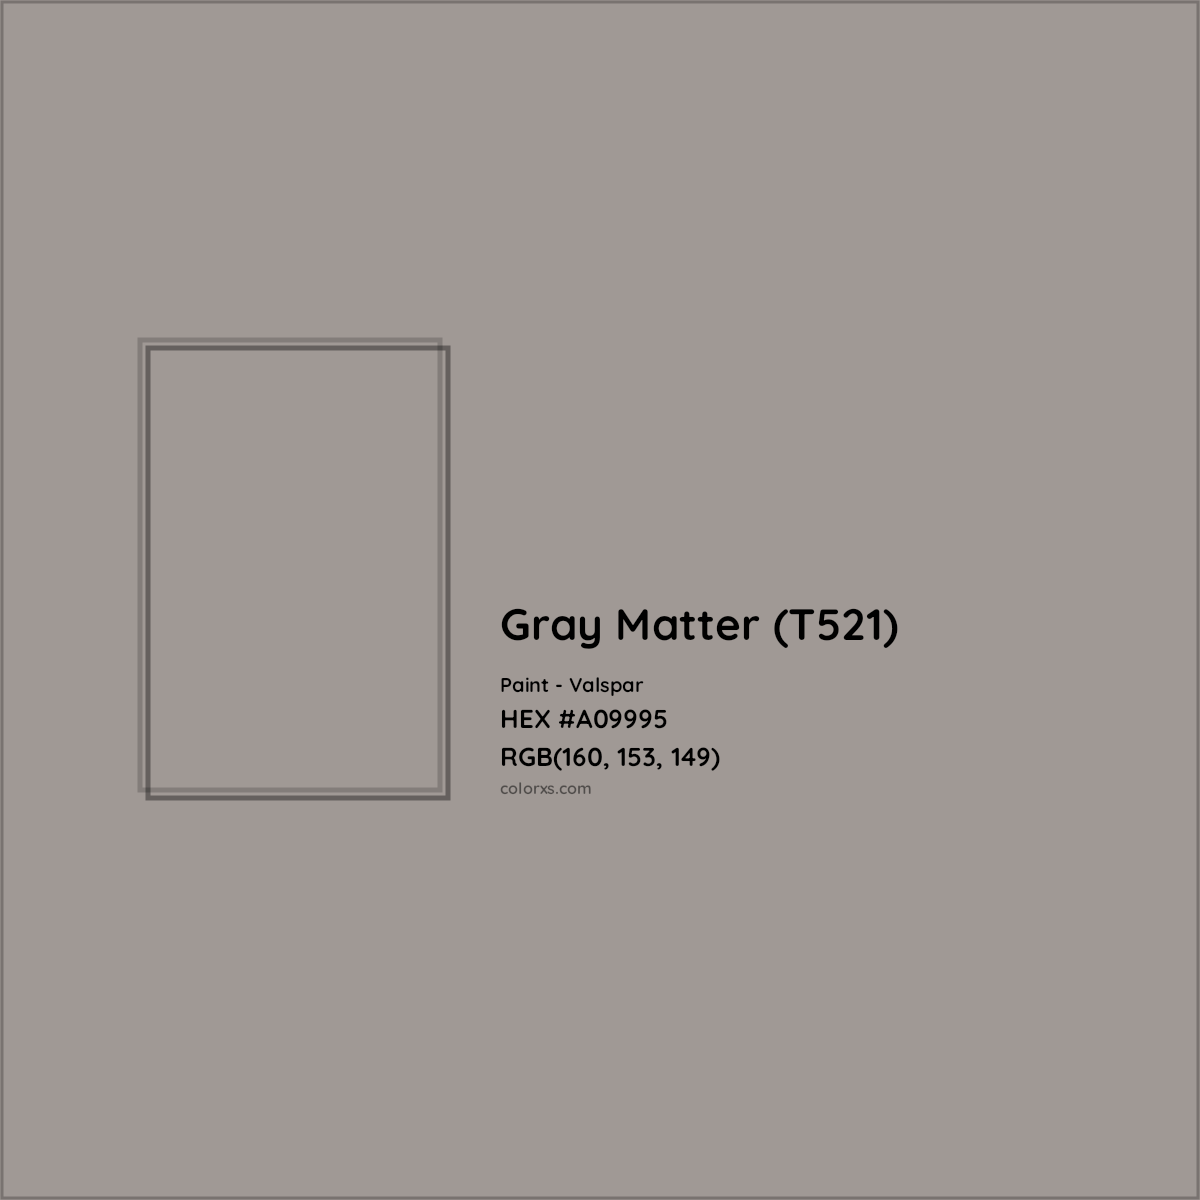 HEX #A09995 Gray Matter (T521) Paint Valspar - Color Code